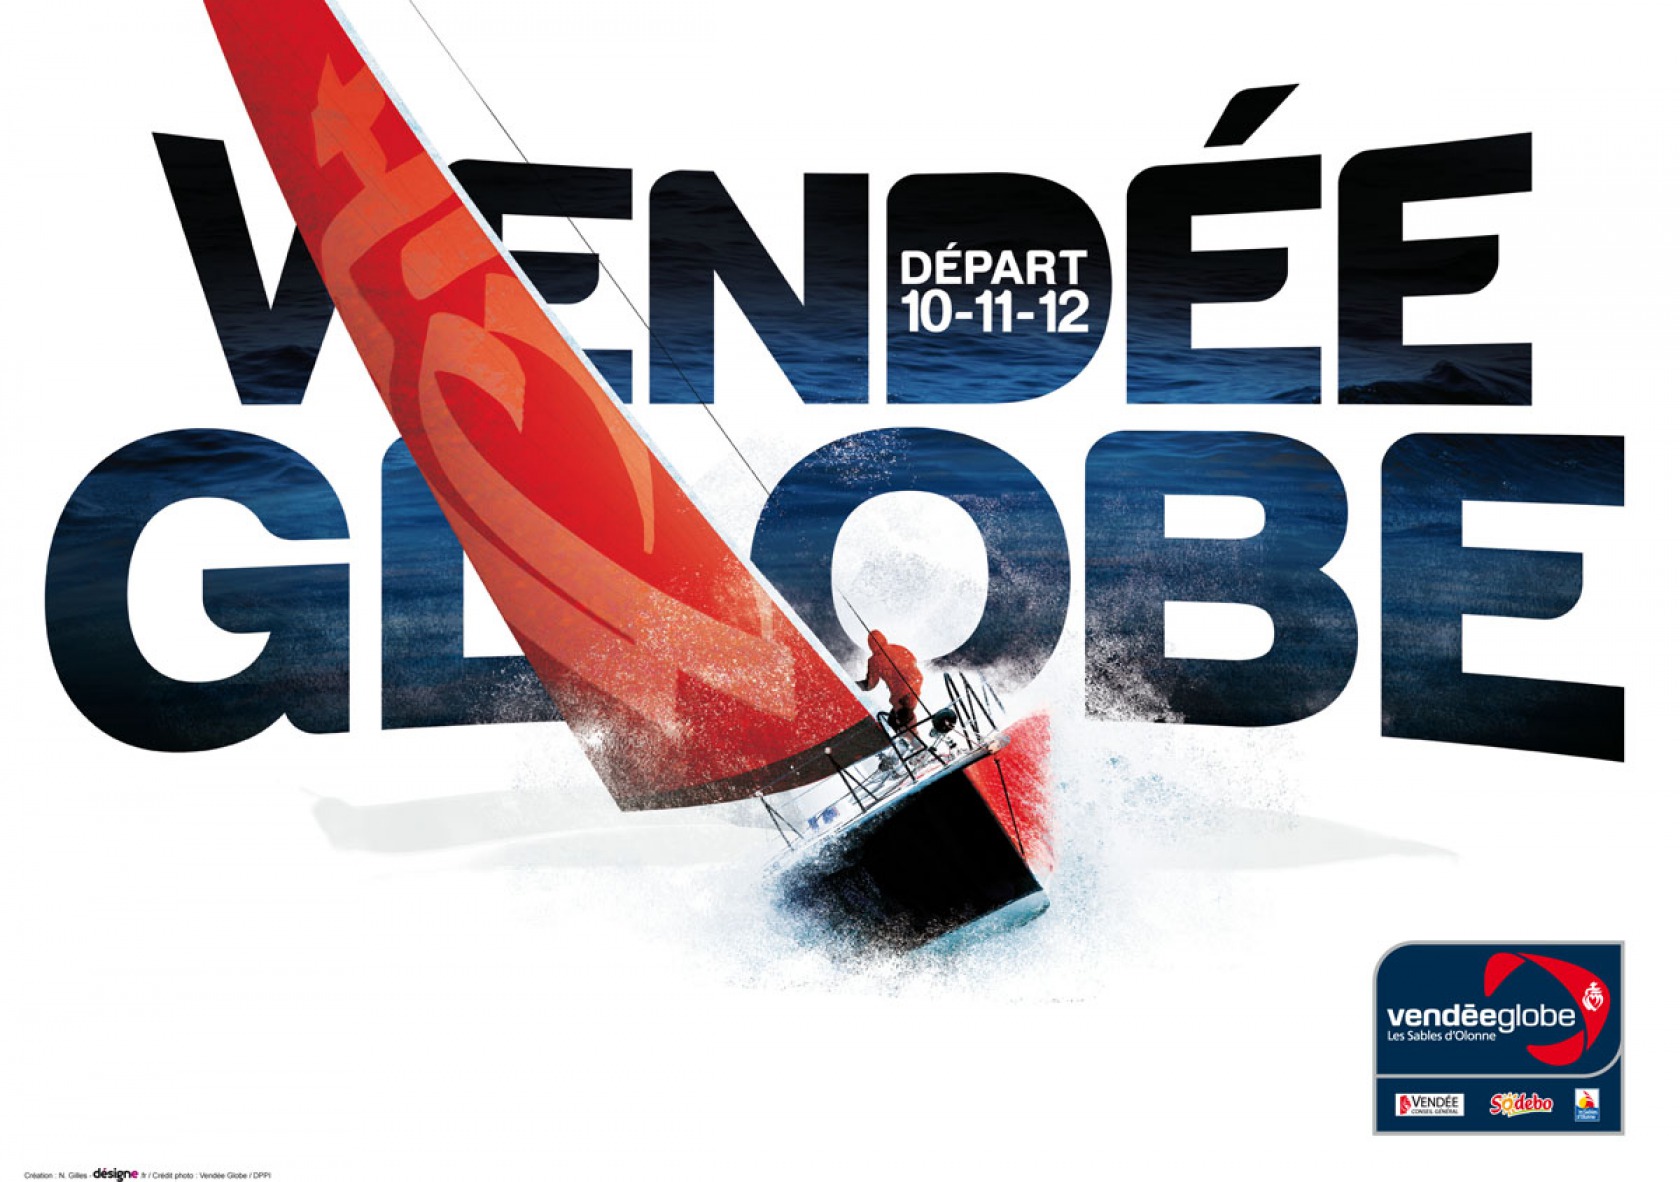 affiche-officielle-du-vendee-globe-2012-2013-r-1680-1200.jpg (288 KB)